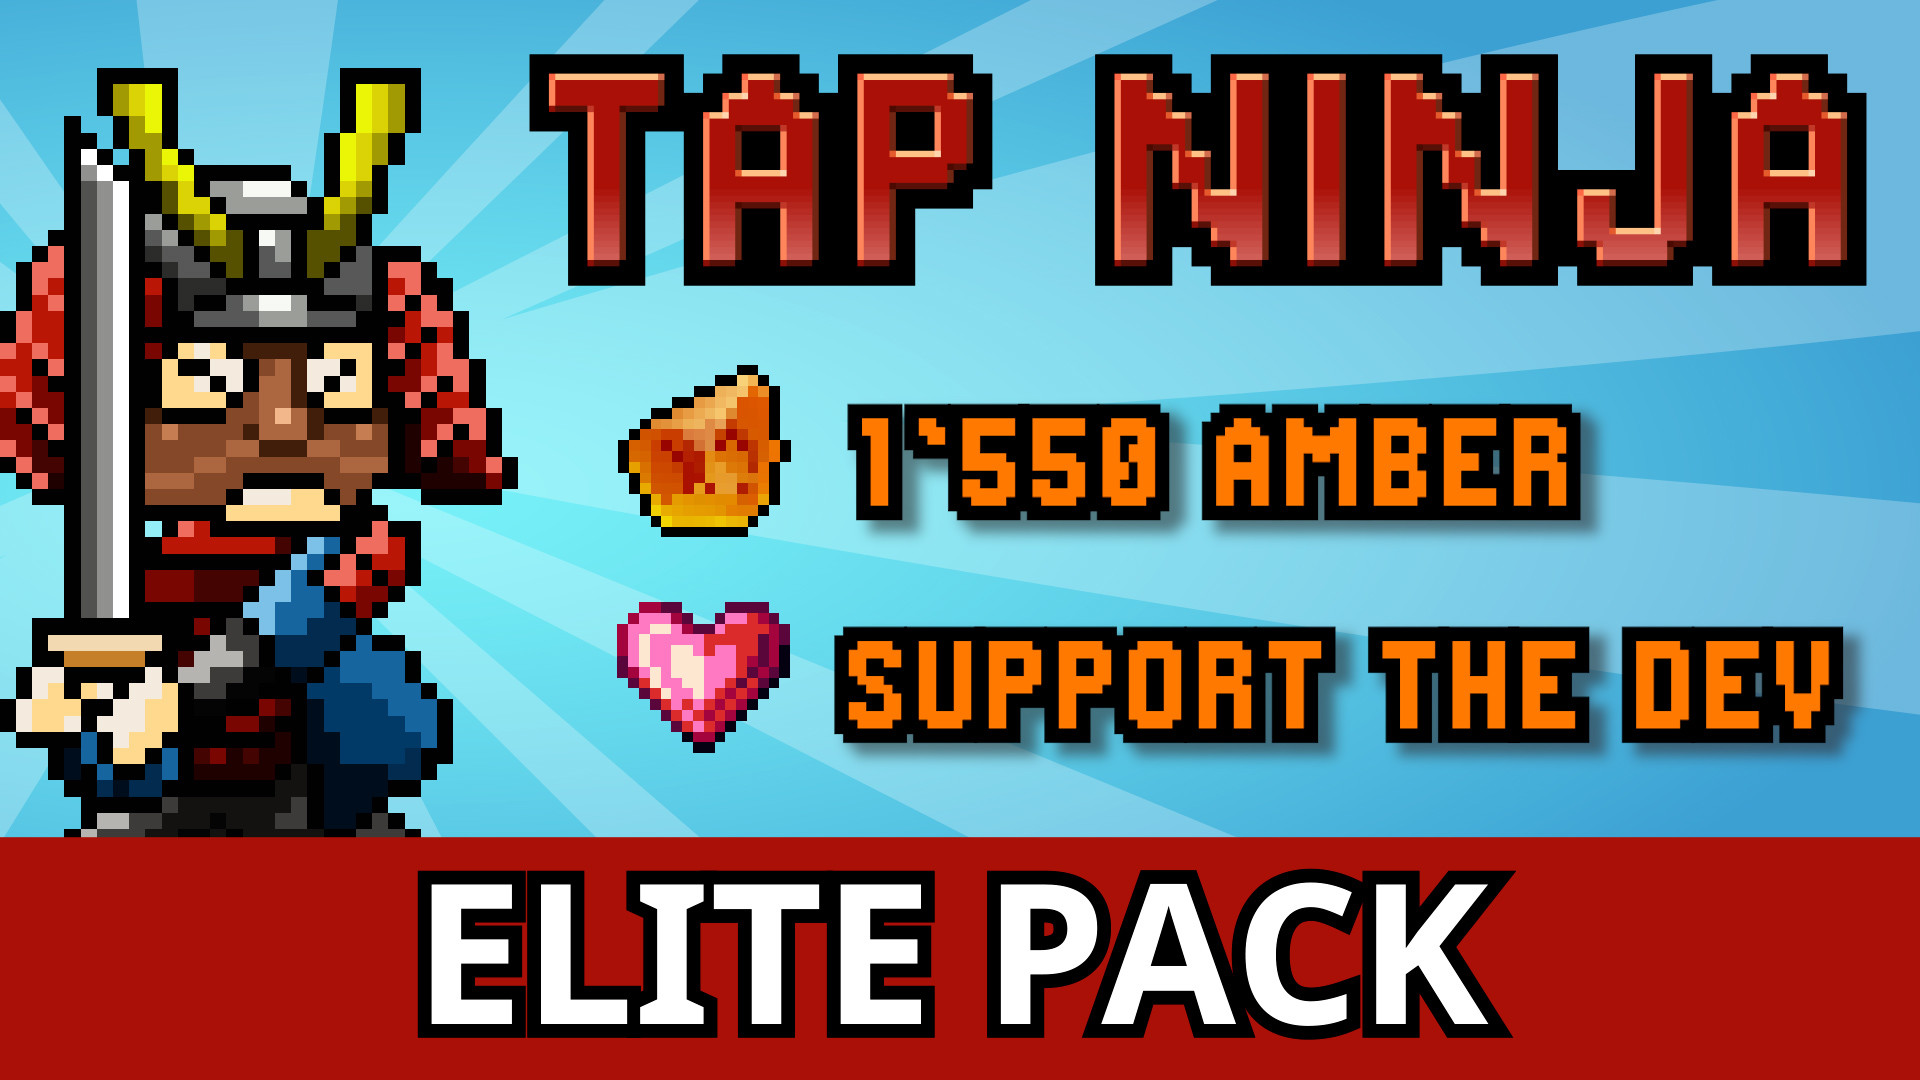 Tap Ninja - Supporter Pack DLC Steam CD Key 4.51$